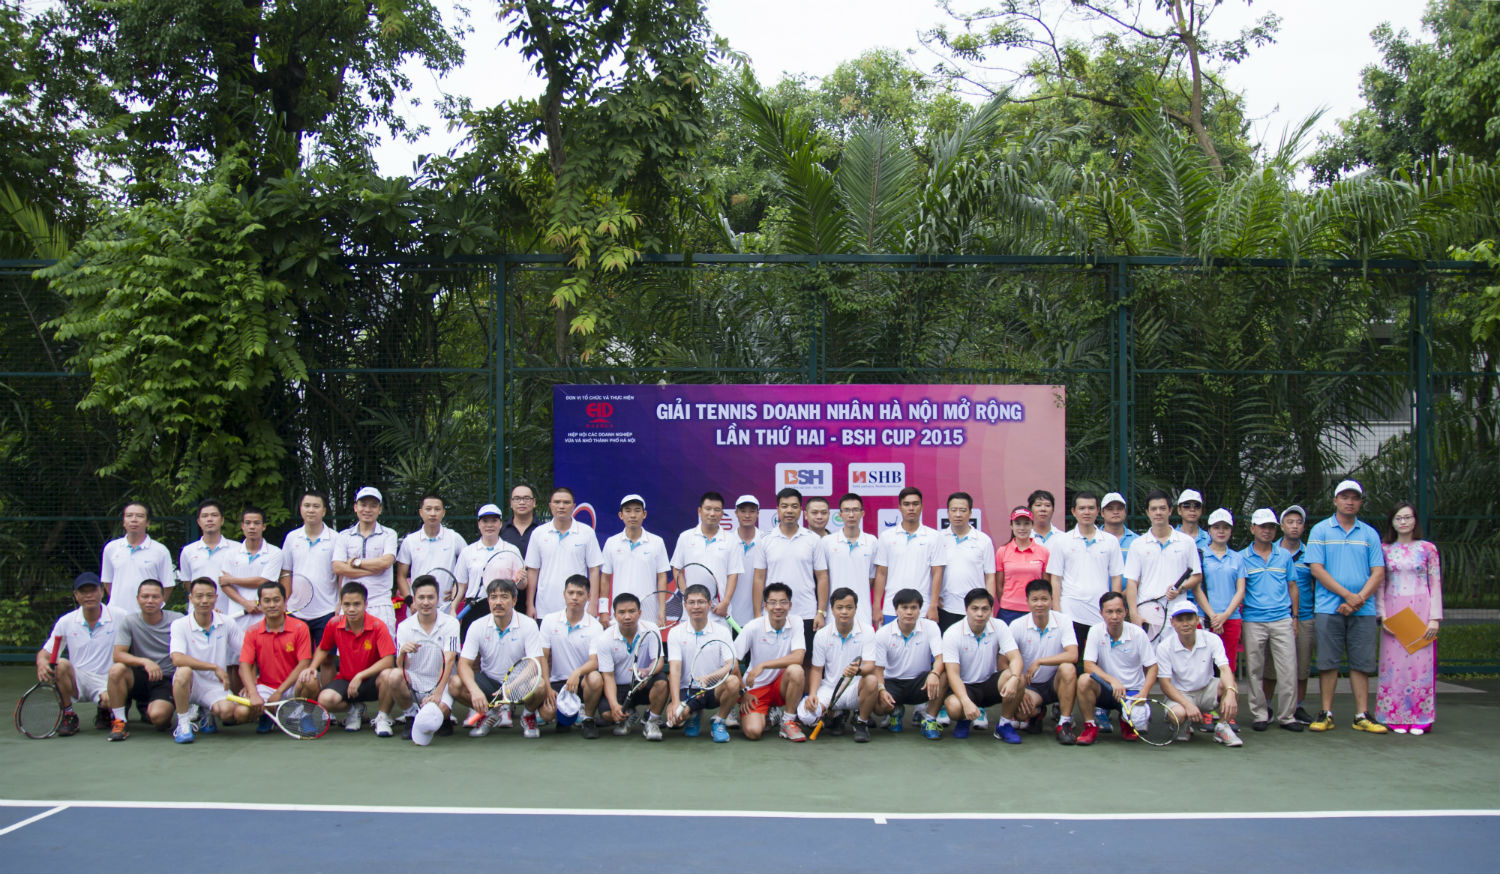 Thư mời tham dự giải tennis doanh nhân Hà Nội mở rộng lần thứ III - Năm 2016